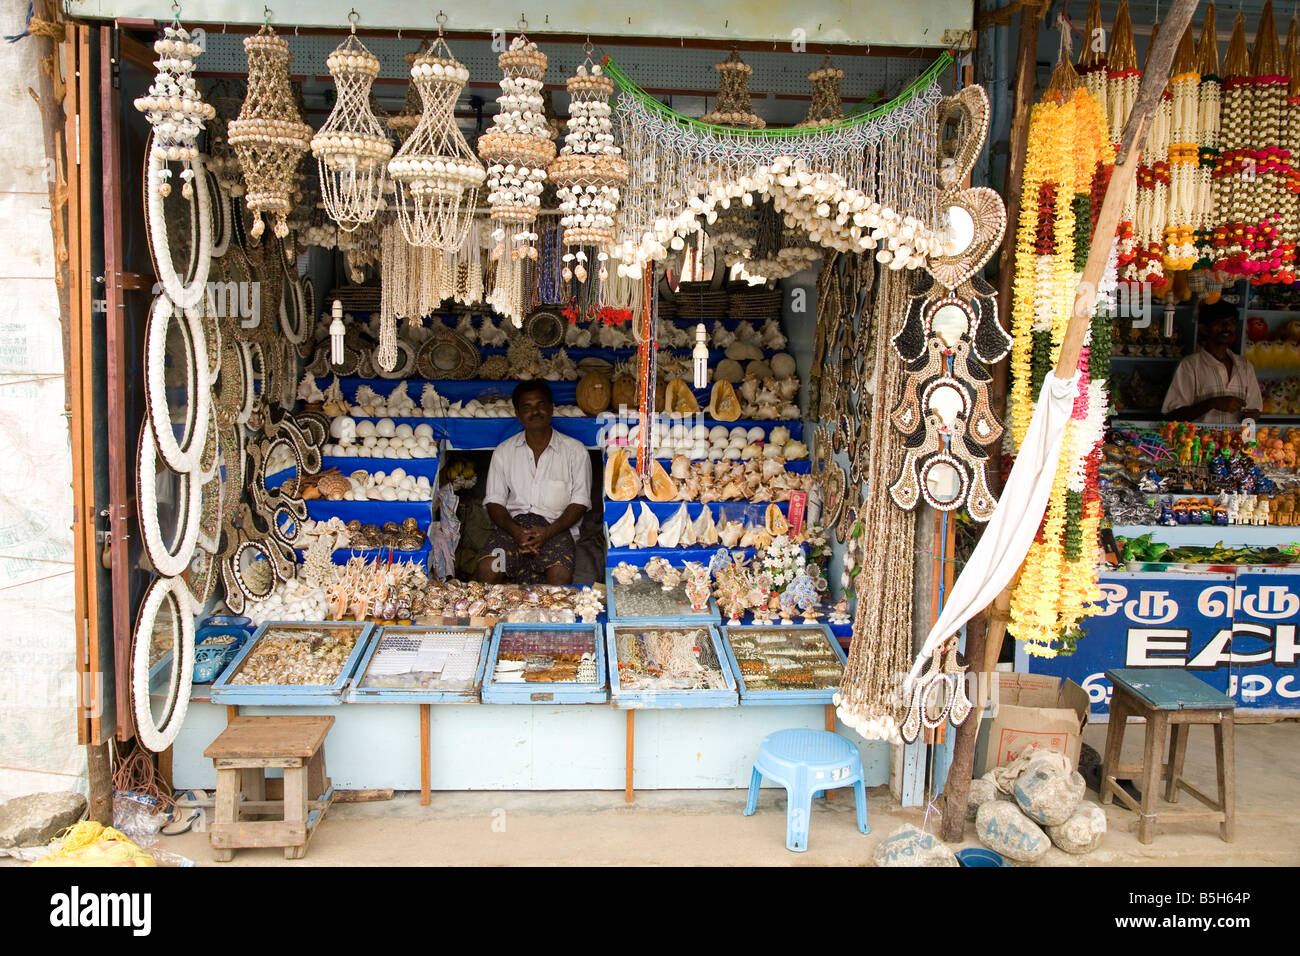 Un stand d'artisanat vente de produits fabriqués à partir de coquilles dans Kanyakumari, continent au point le plus au sud de l'Inde. Banque D'Images